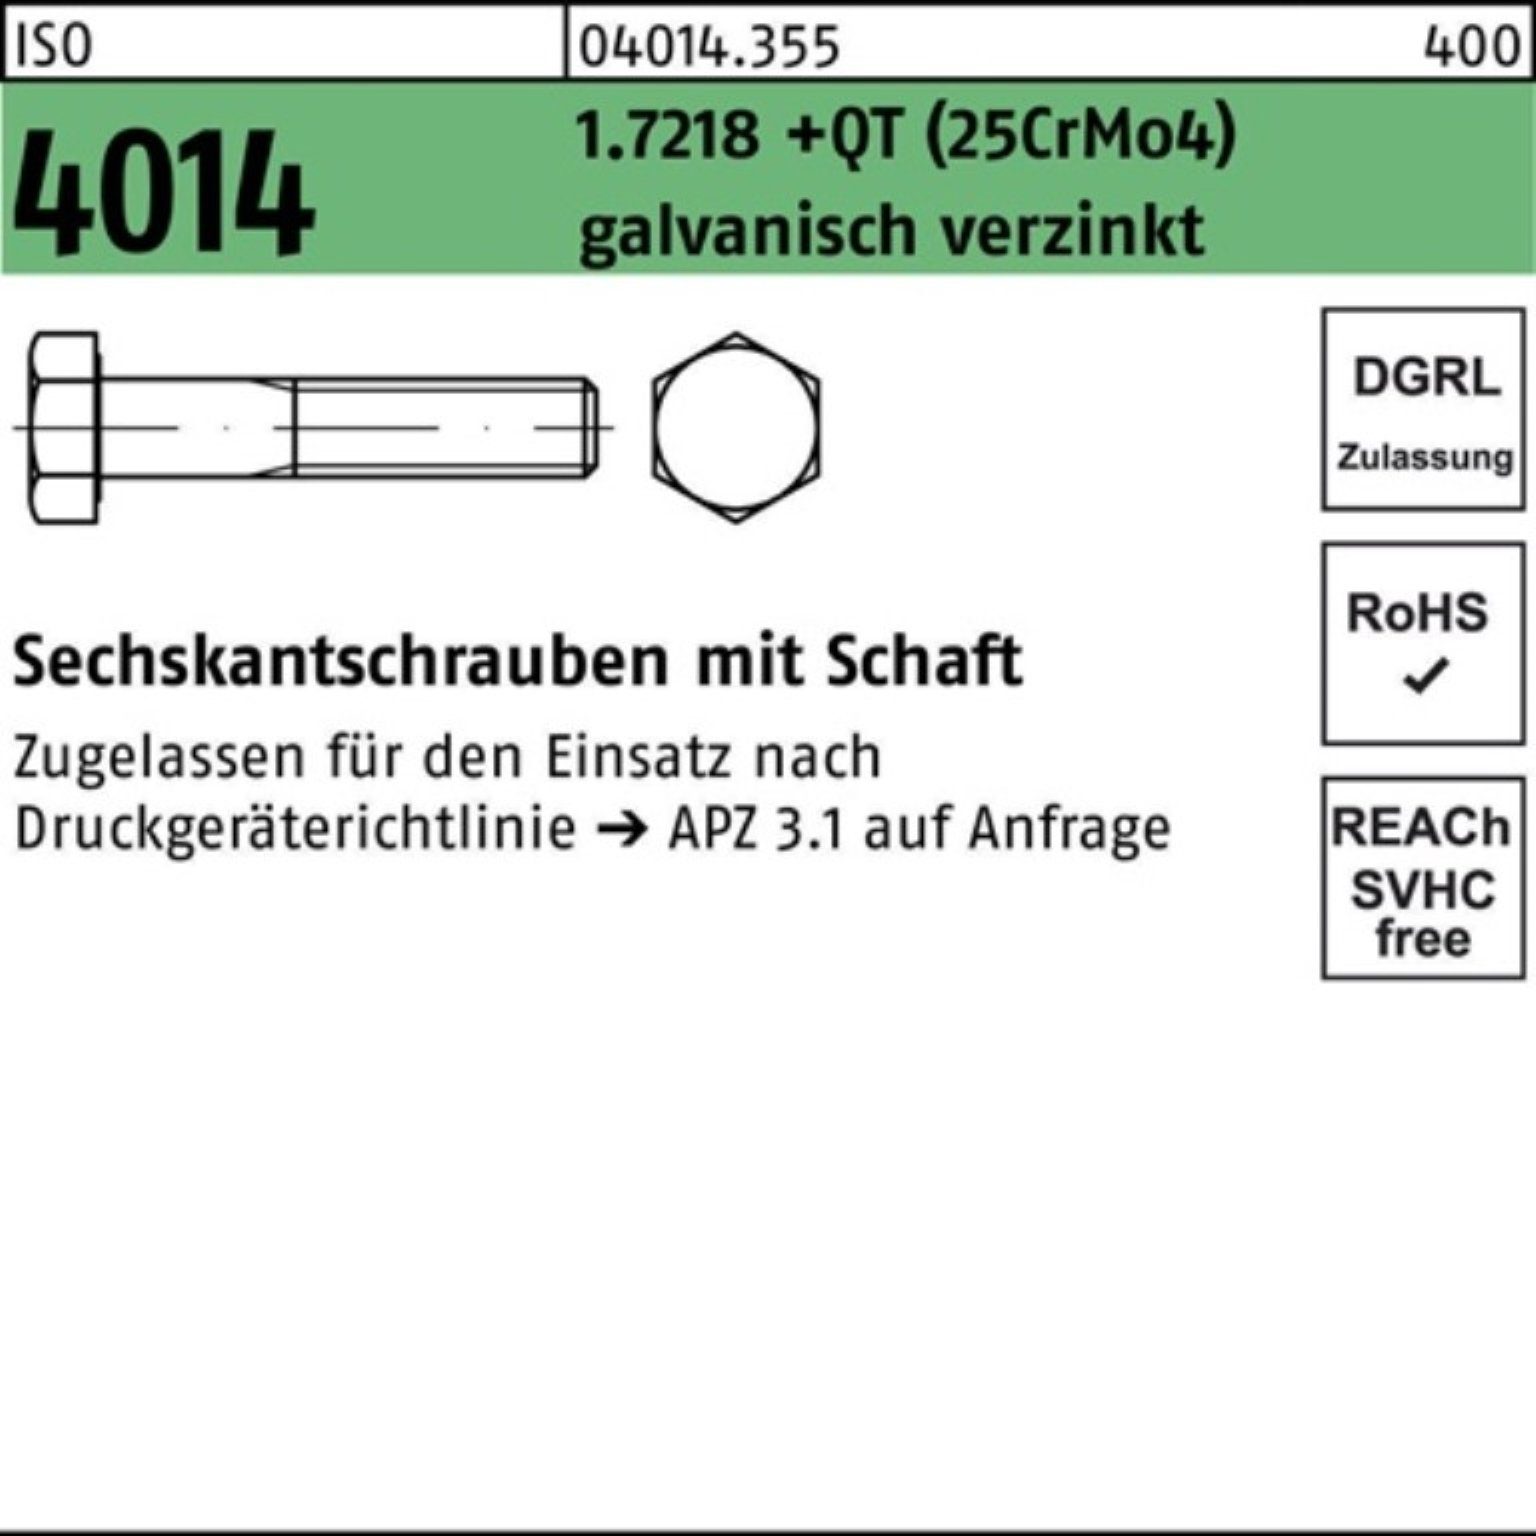 Bufab Sechskantschraube 100er Pack Sechskantschraube +QT (25CrMo M12x75 4014 1.7218 Schaft ISO